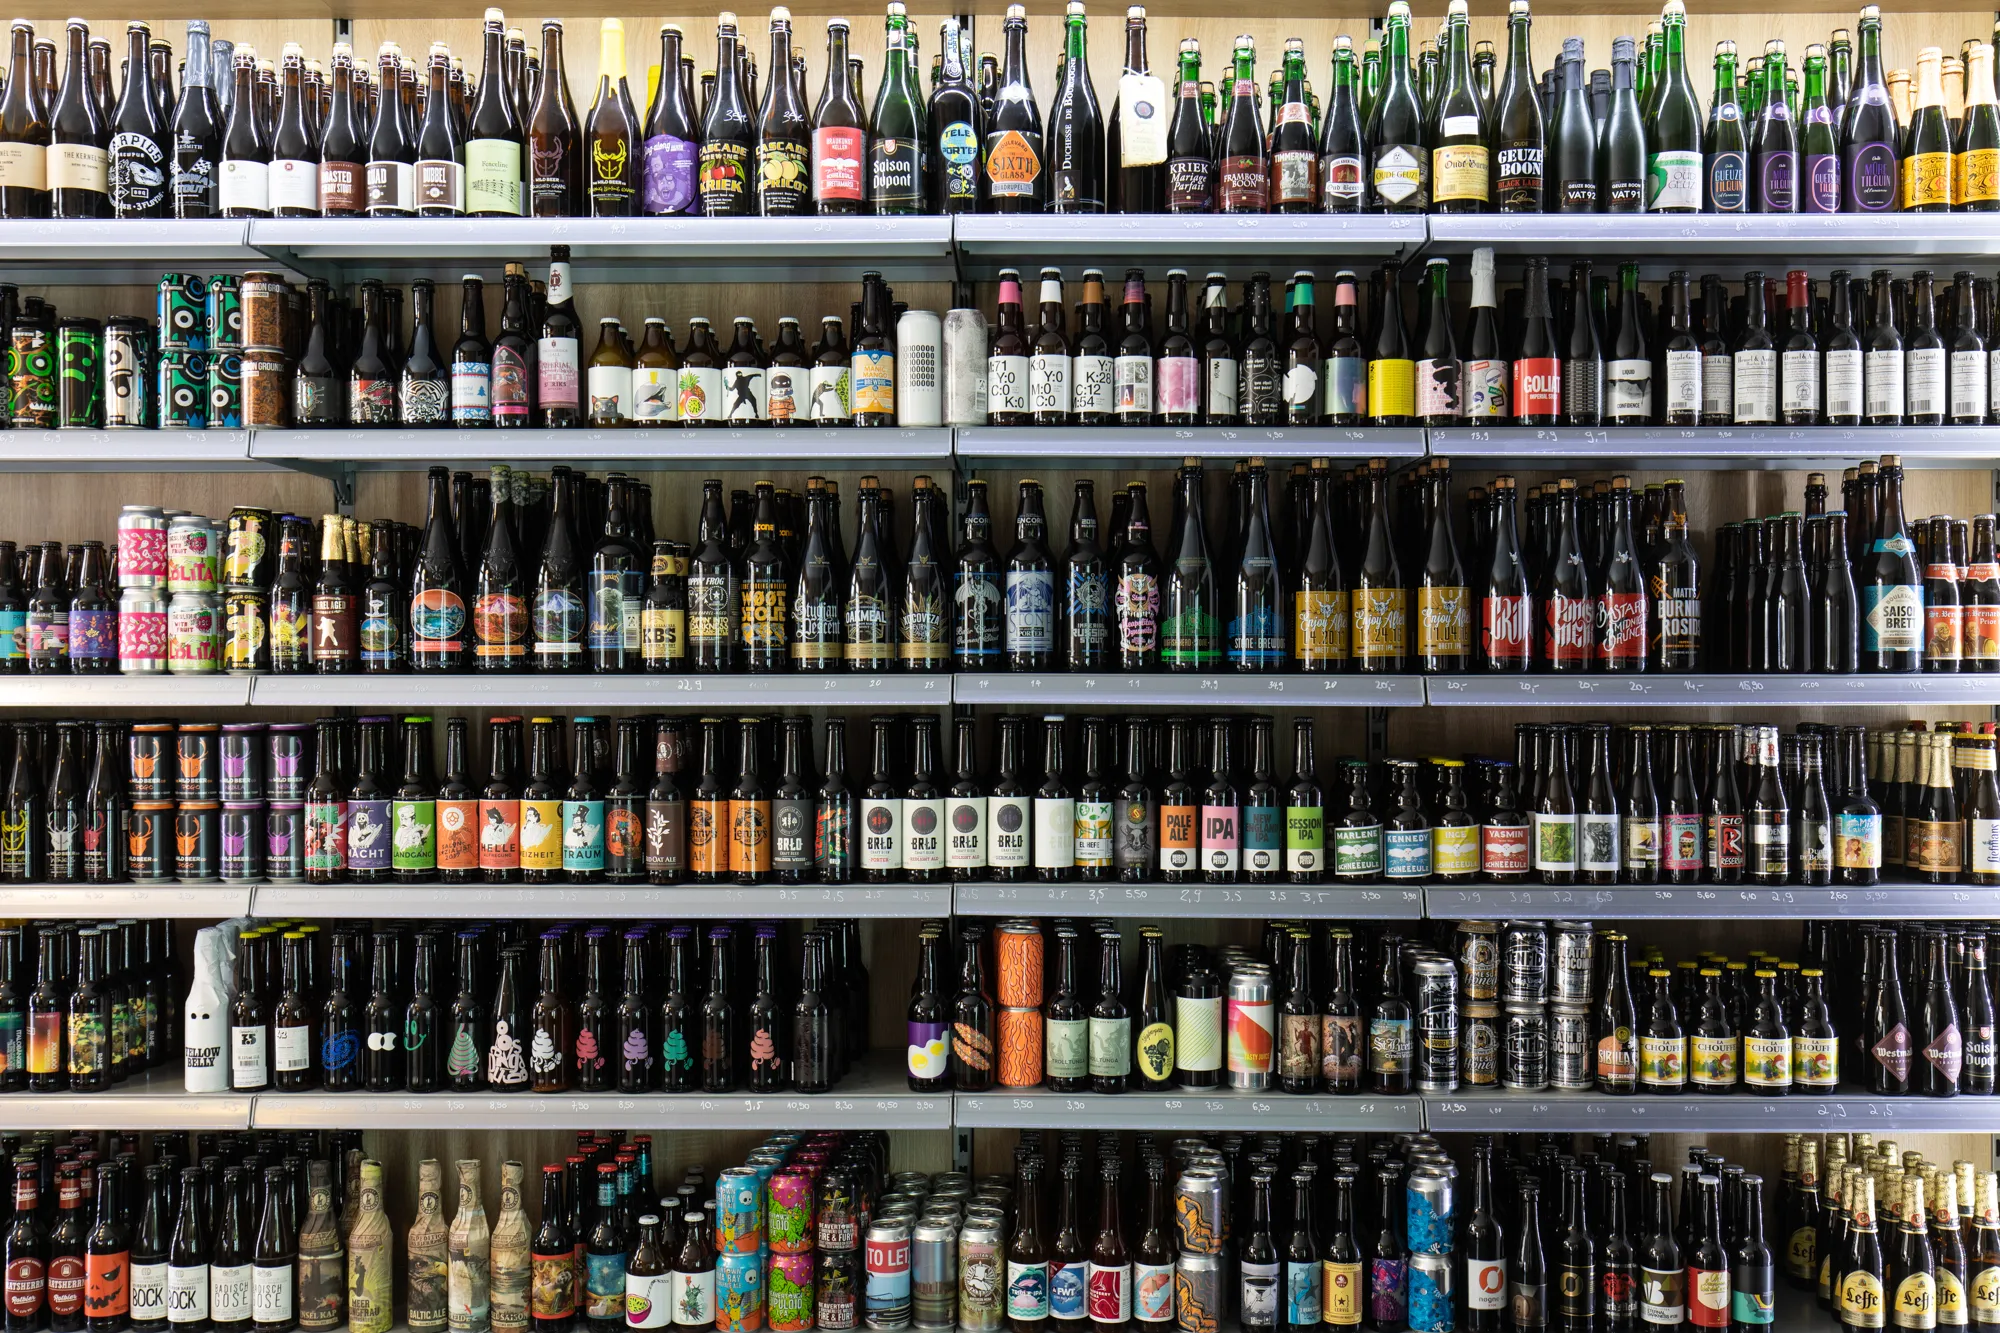 Biererei Store in Germany, europe | Beer - Country Helper